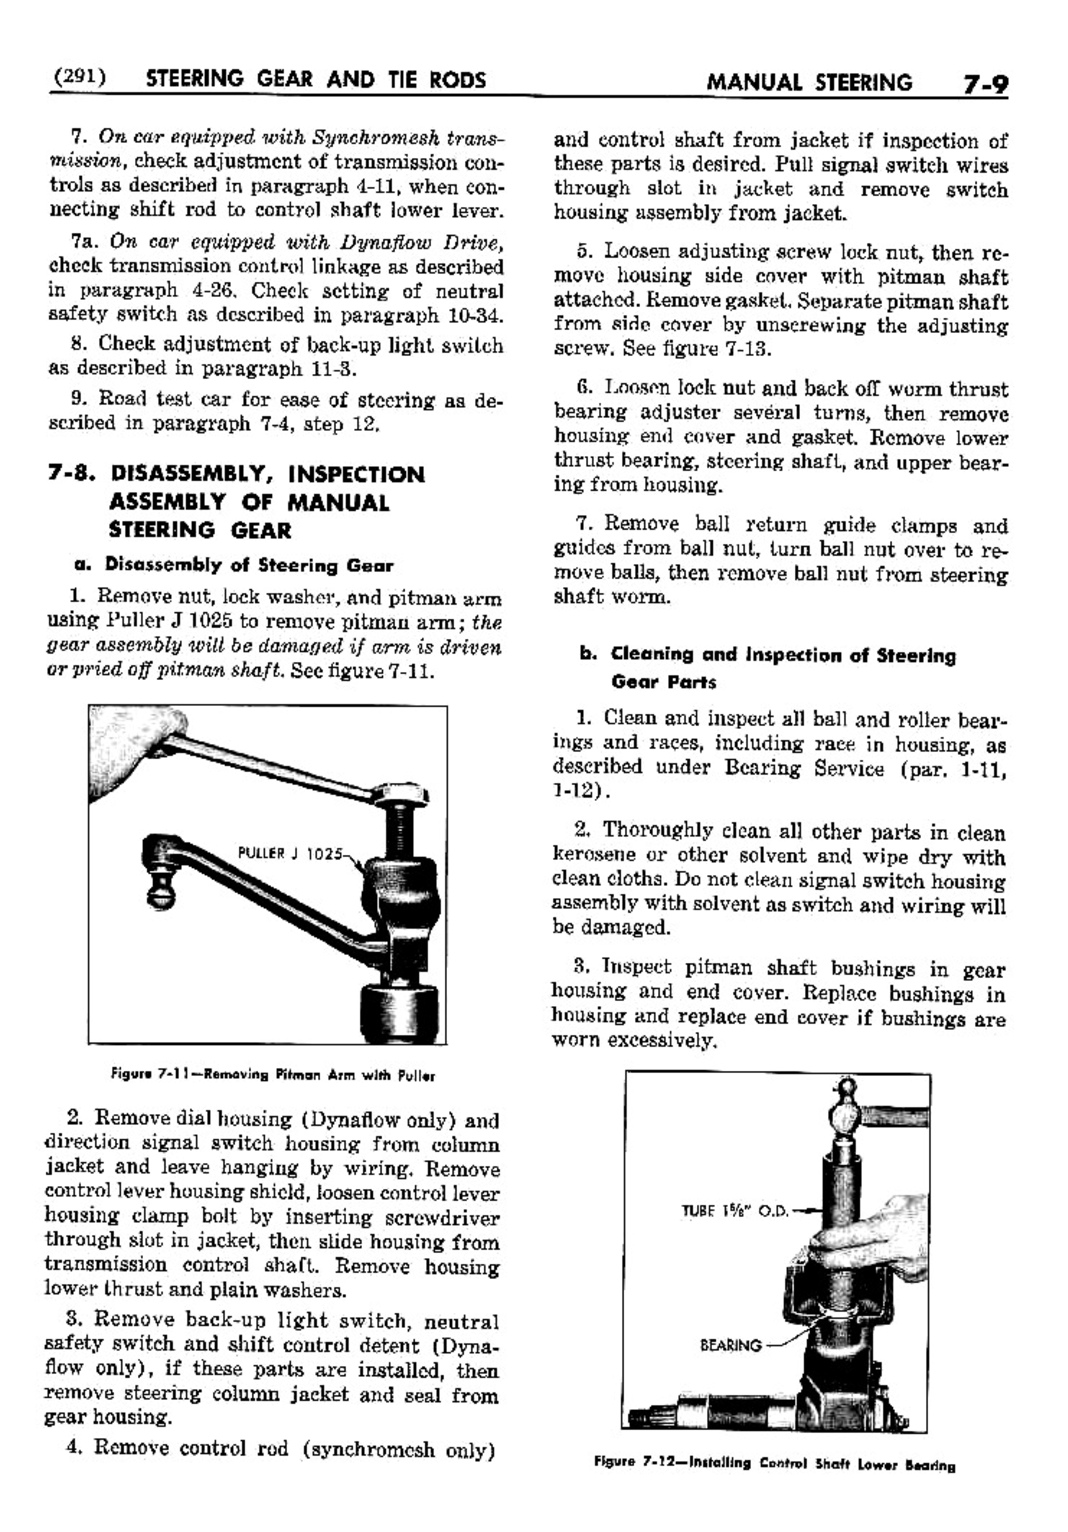 n_08 1952 Buick Shop Manual - Steering-009-009.jpg